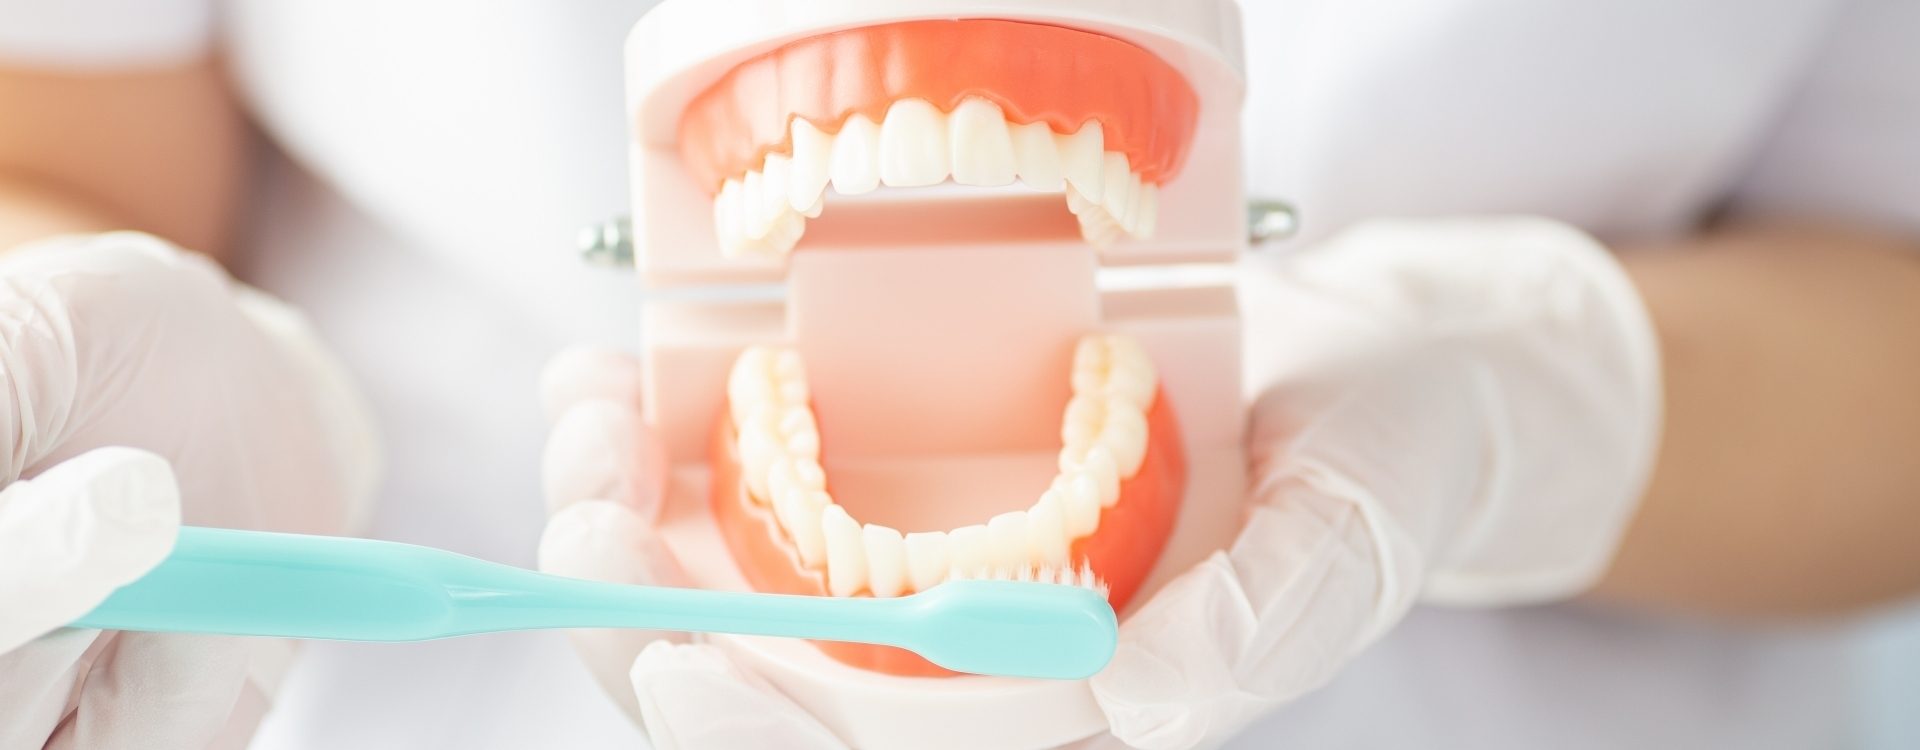 歯周病・歯肉炎の治療